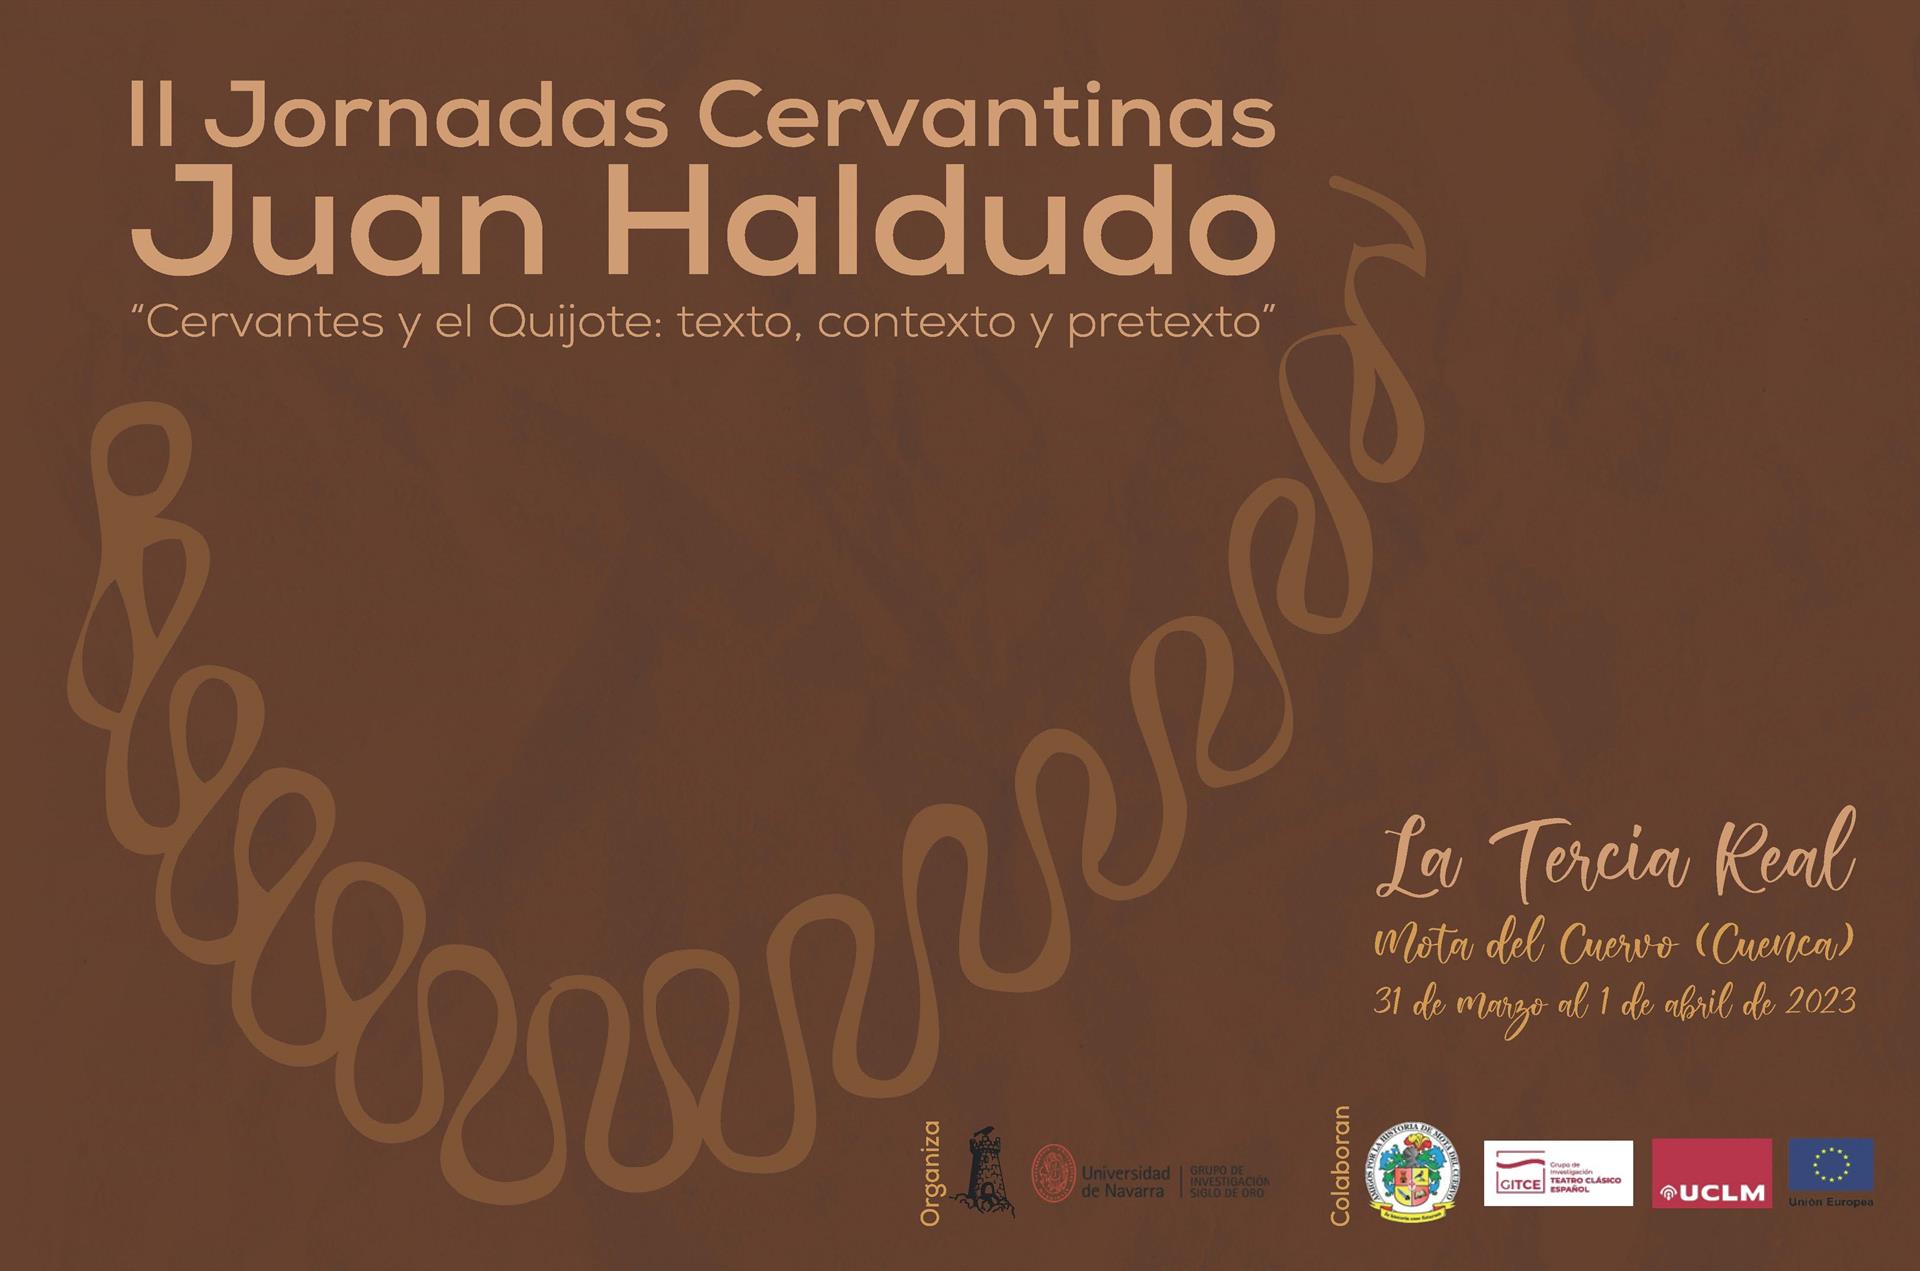 II Jornadas Cervantinas Juan Haldudo, Cervantes y el Quijote: texto, contexto y pretexto - AY MOTA DEL CUERVO